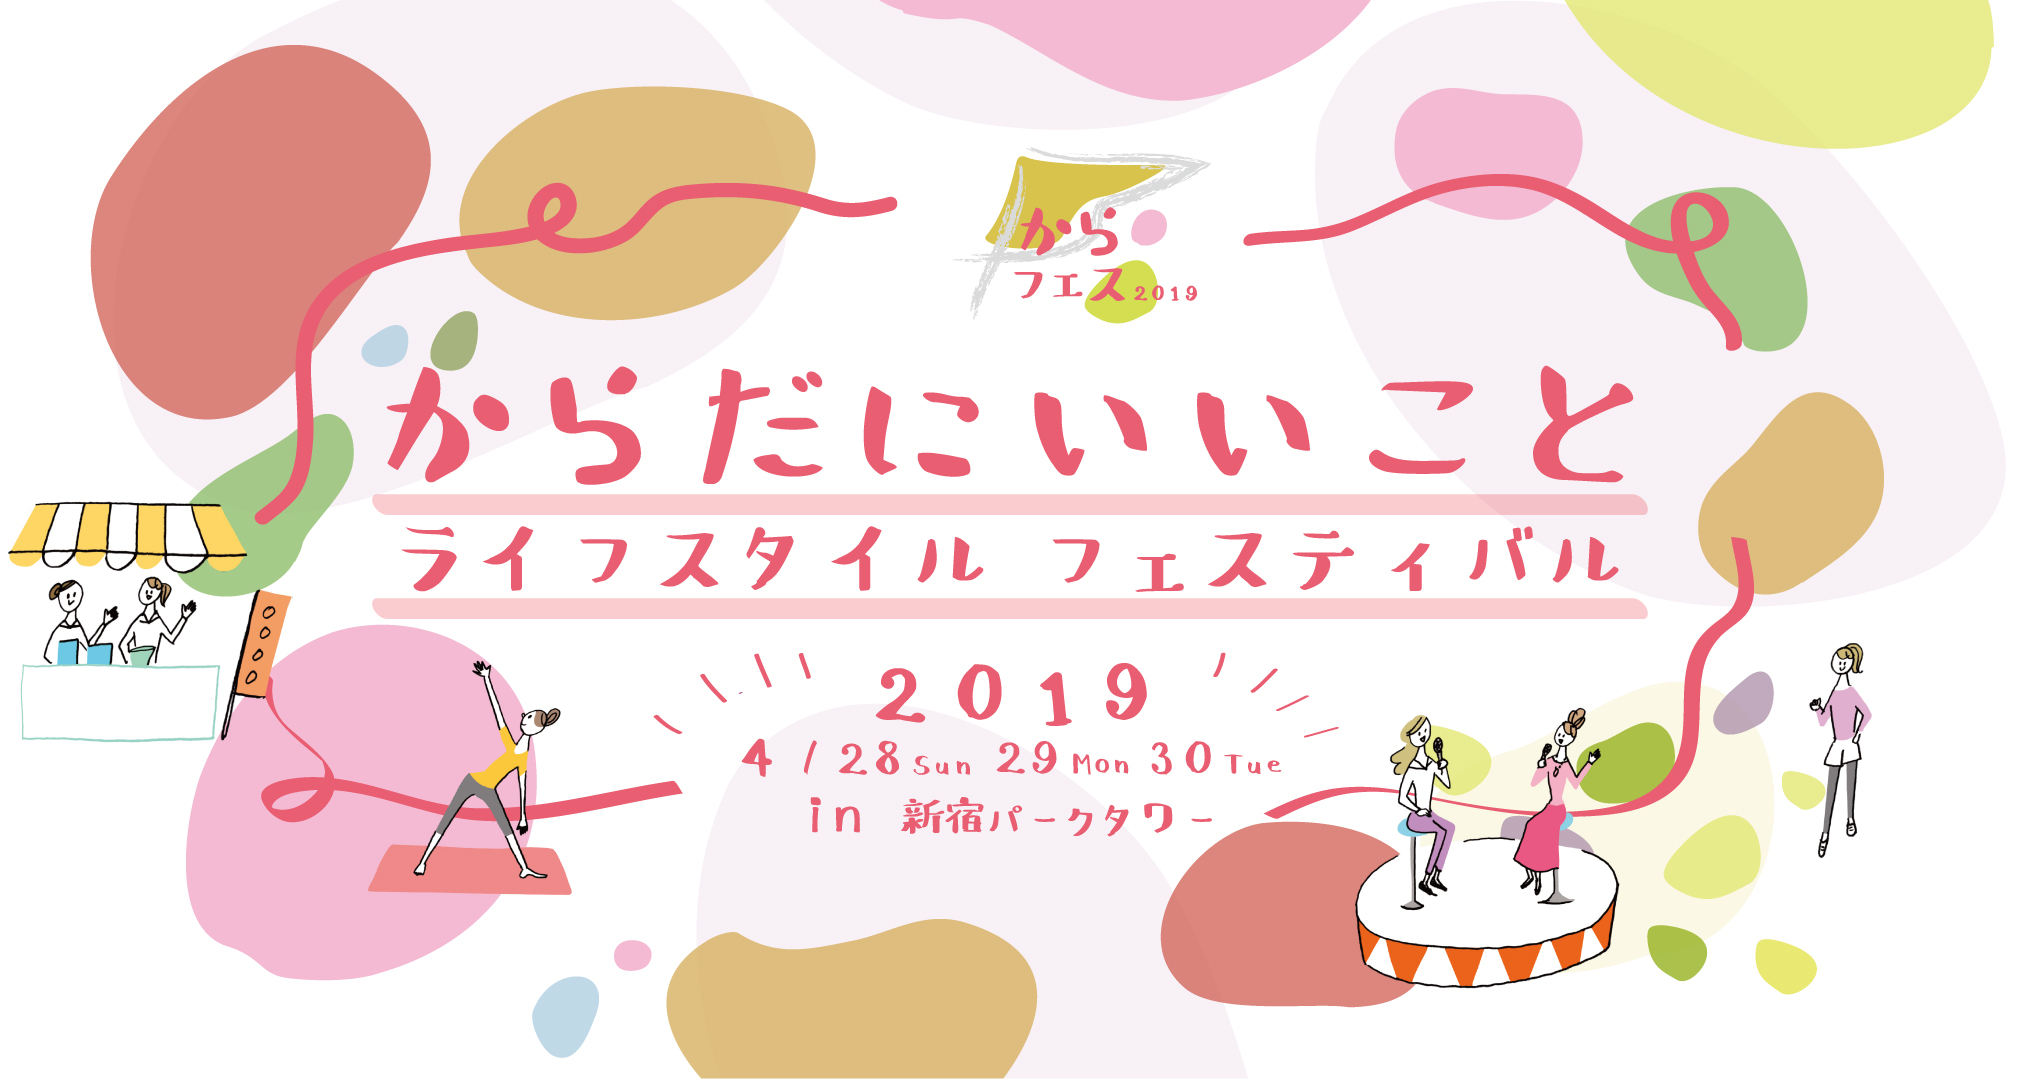 からだにいいことライフスタイルフェス 2019 4/28 29 30 in 新宿パークタワー